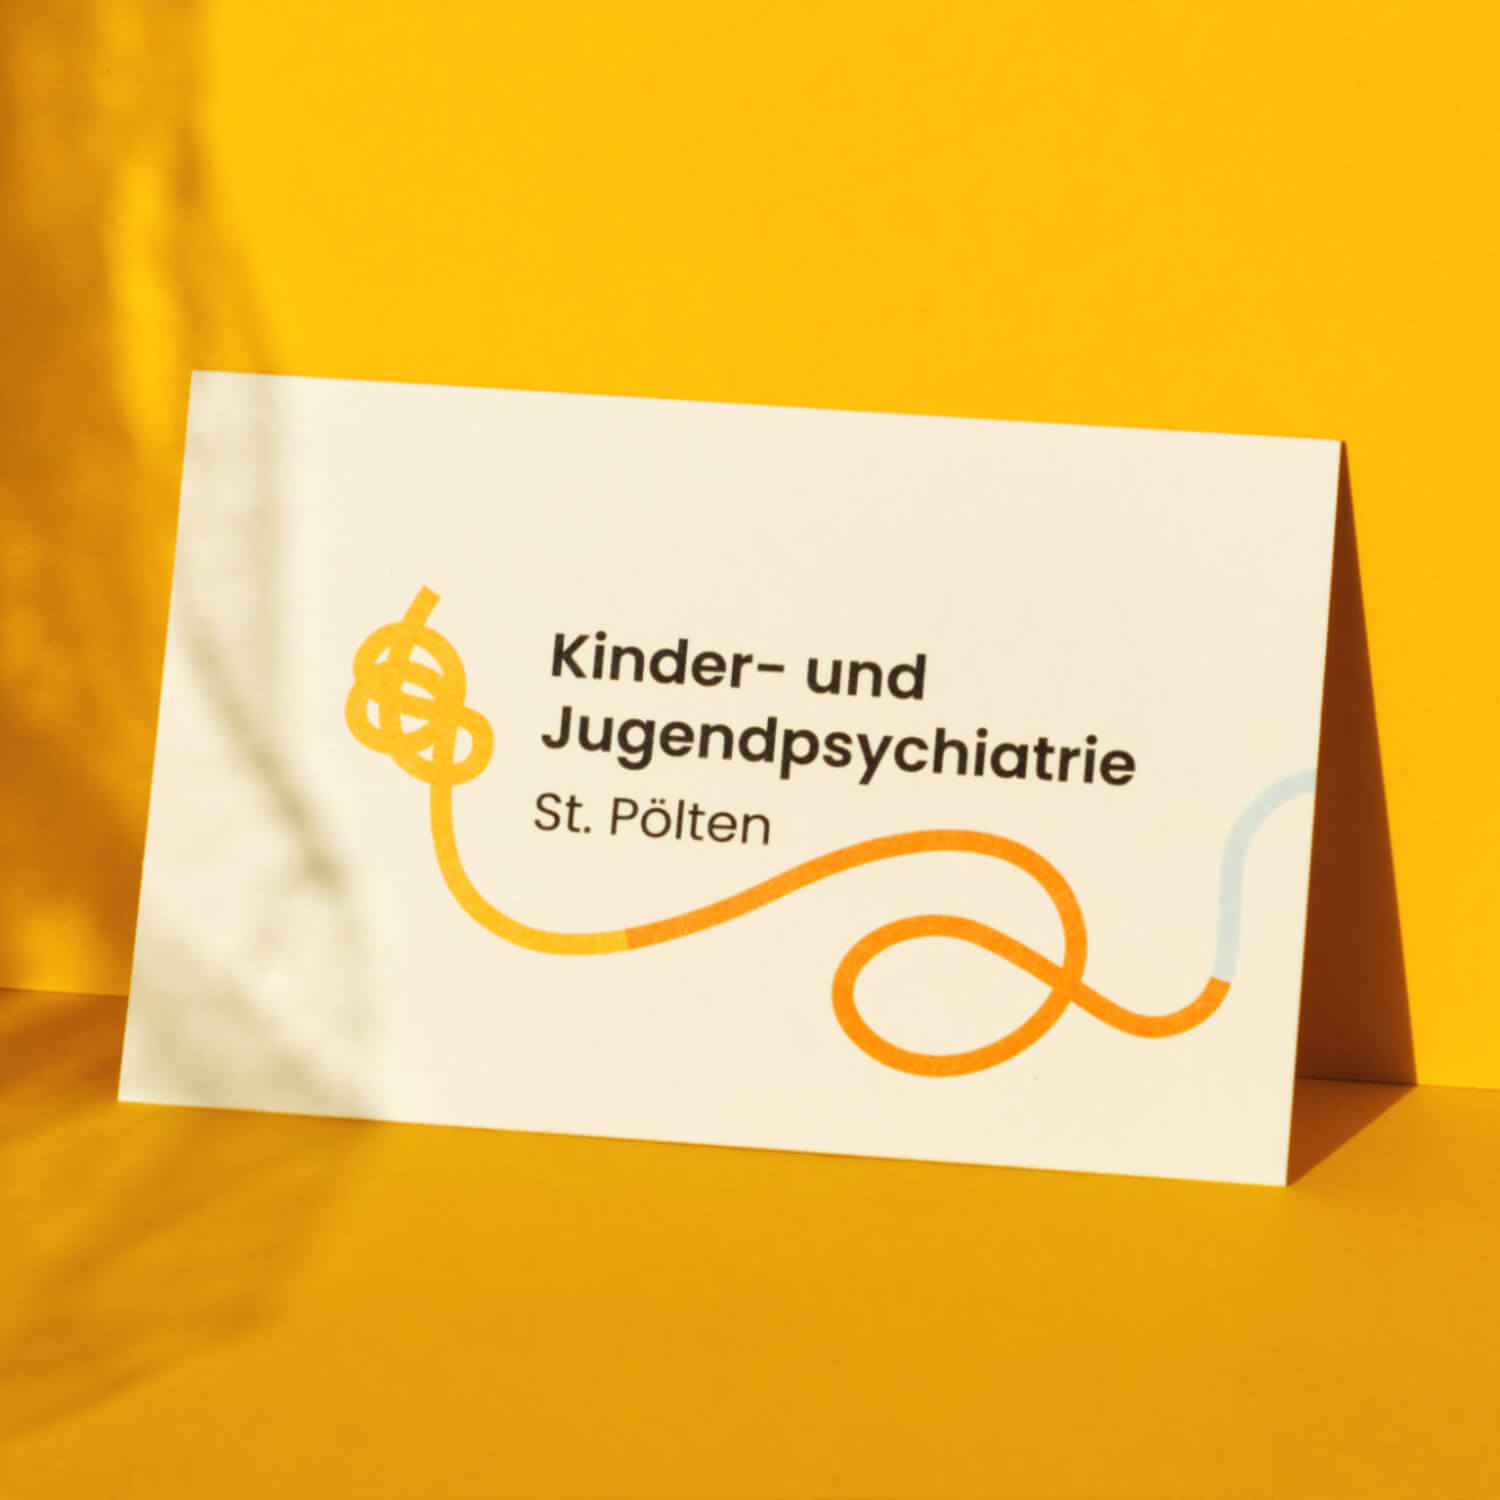 Petra-Hollander-Kinder-und-Jugendpsychiatrie-St-Poelten-Branding-Illustration-Graphic-Design-Wien-Vienna-thumb2